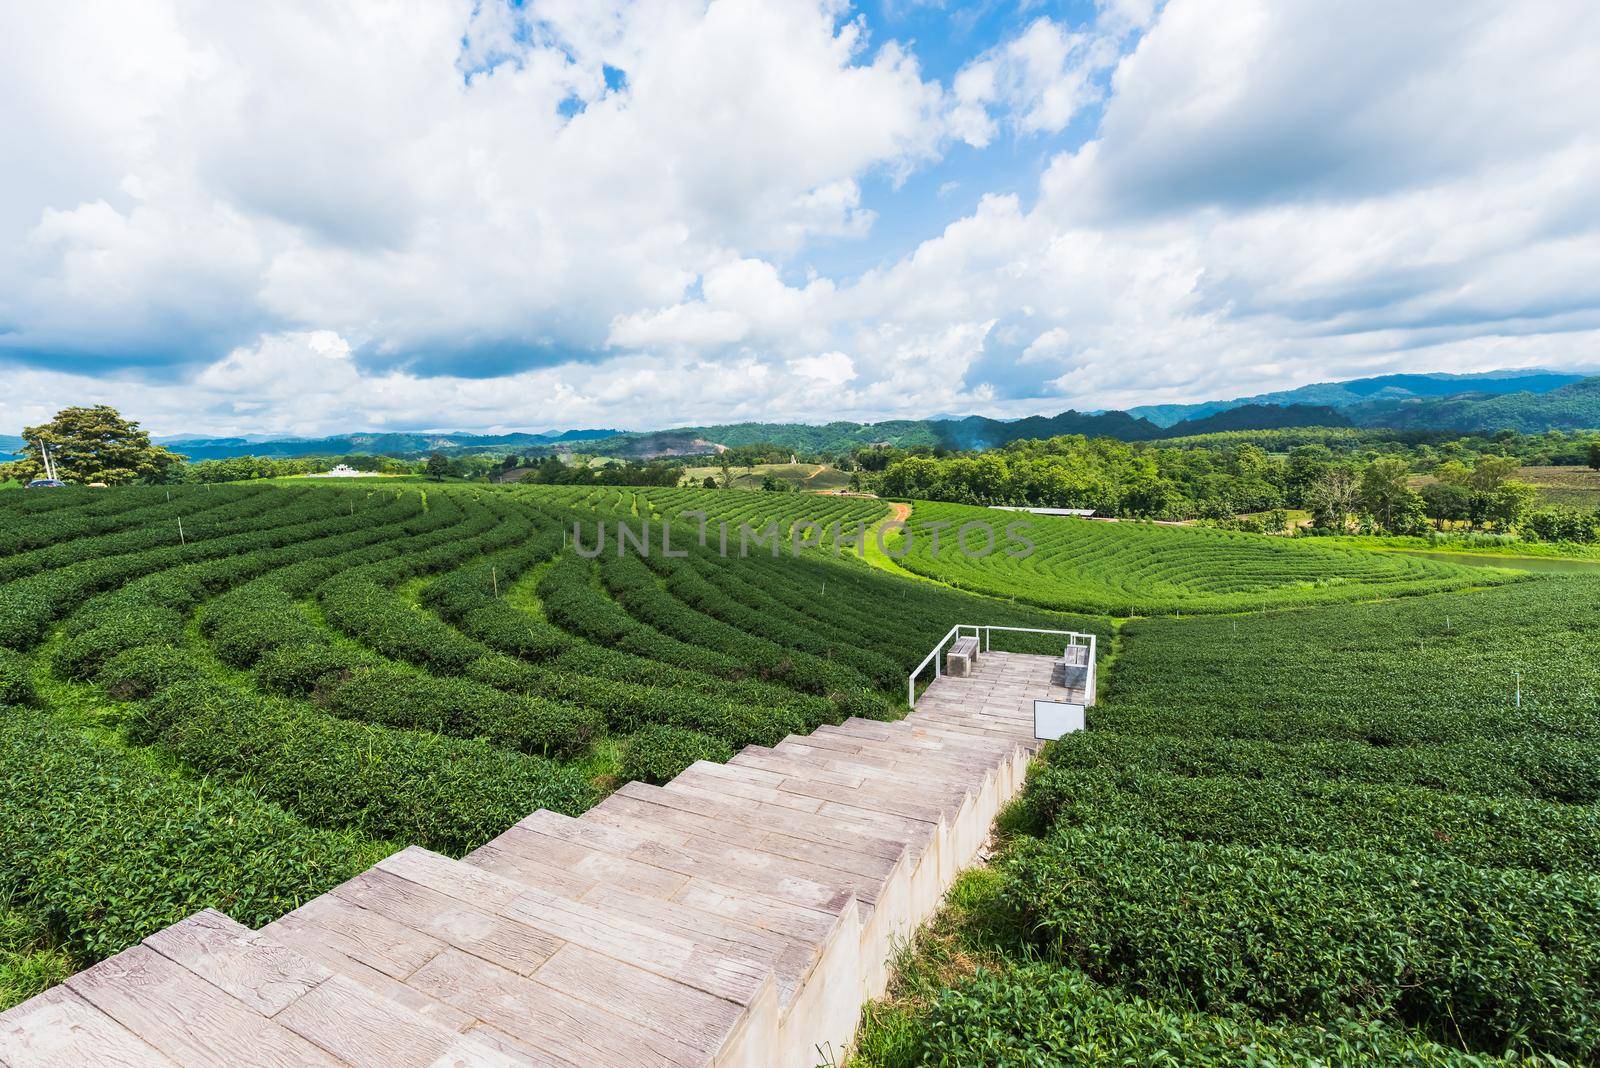 Tea farm at chiang rai, Thailand by Wmpix